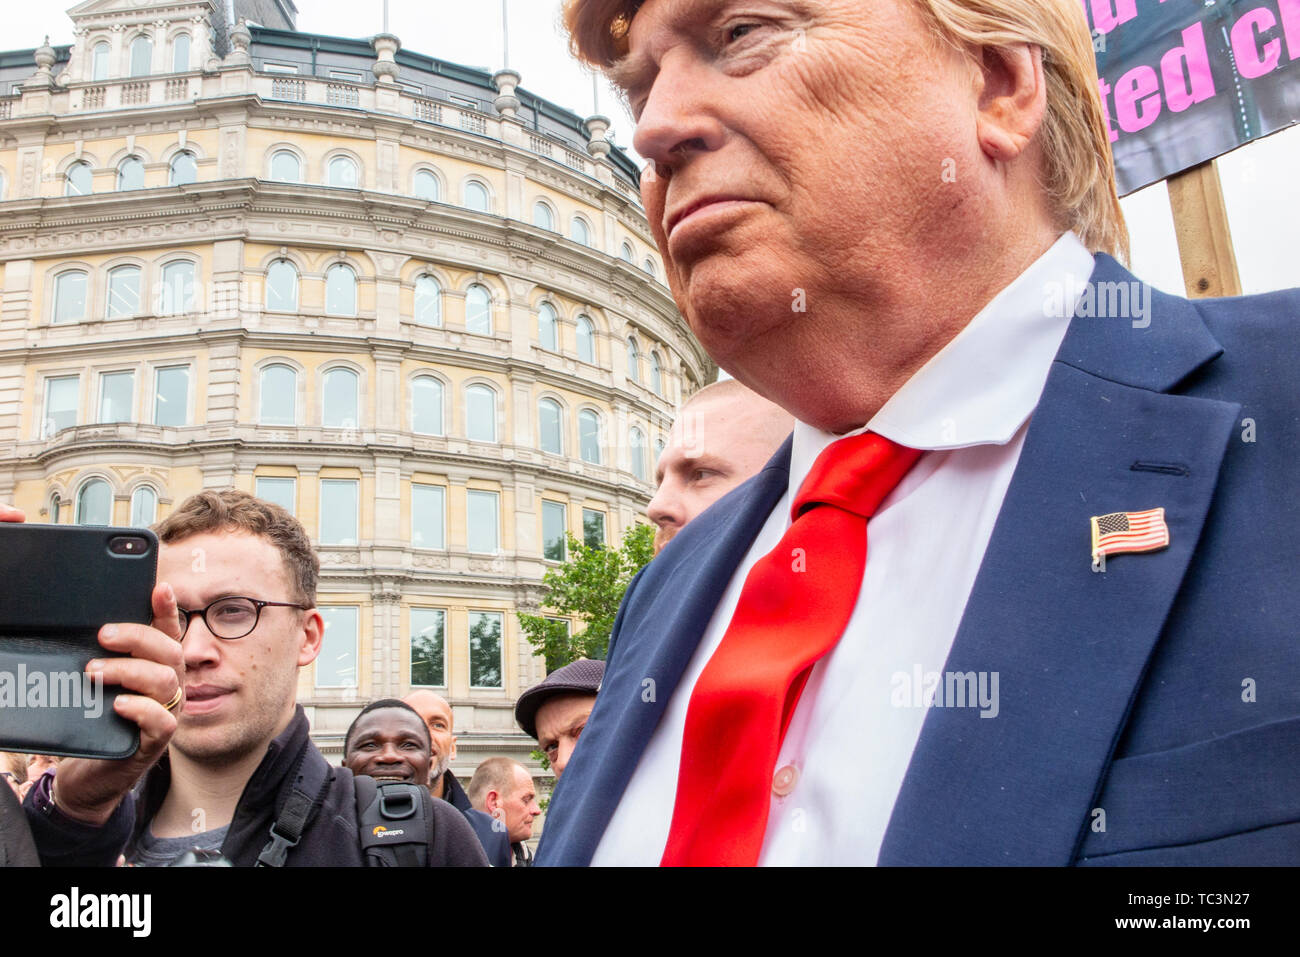 Un Donald Trump impersonator cammina per le strade di Londra con i manifestanti a Trafalgar Square dimostrando contro la visita di stato di Donald Trump Foto Stock